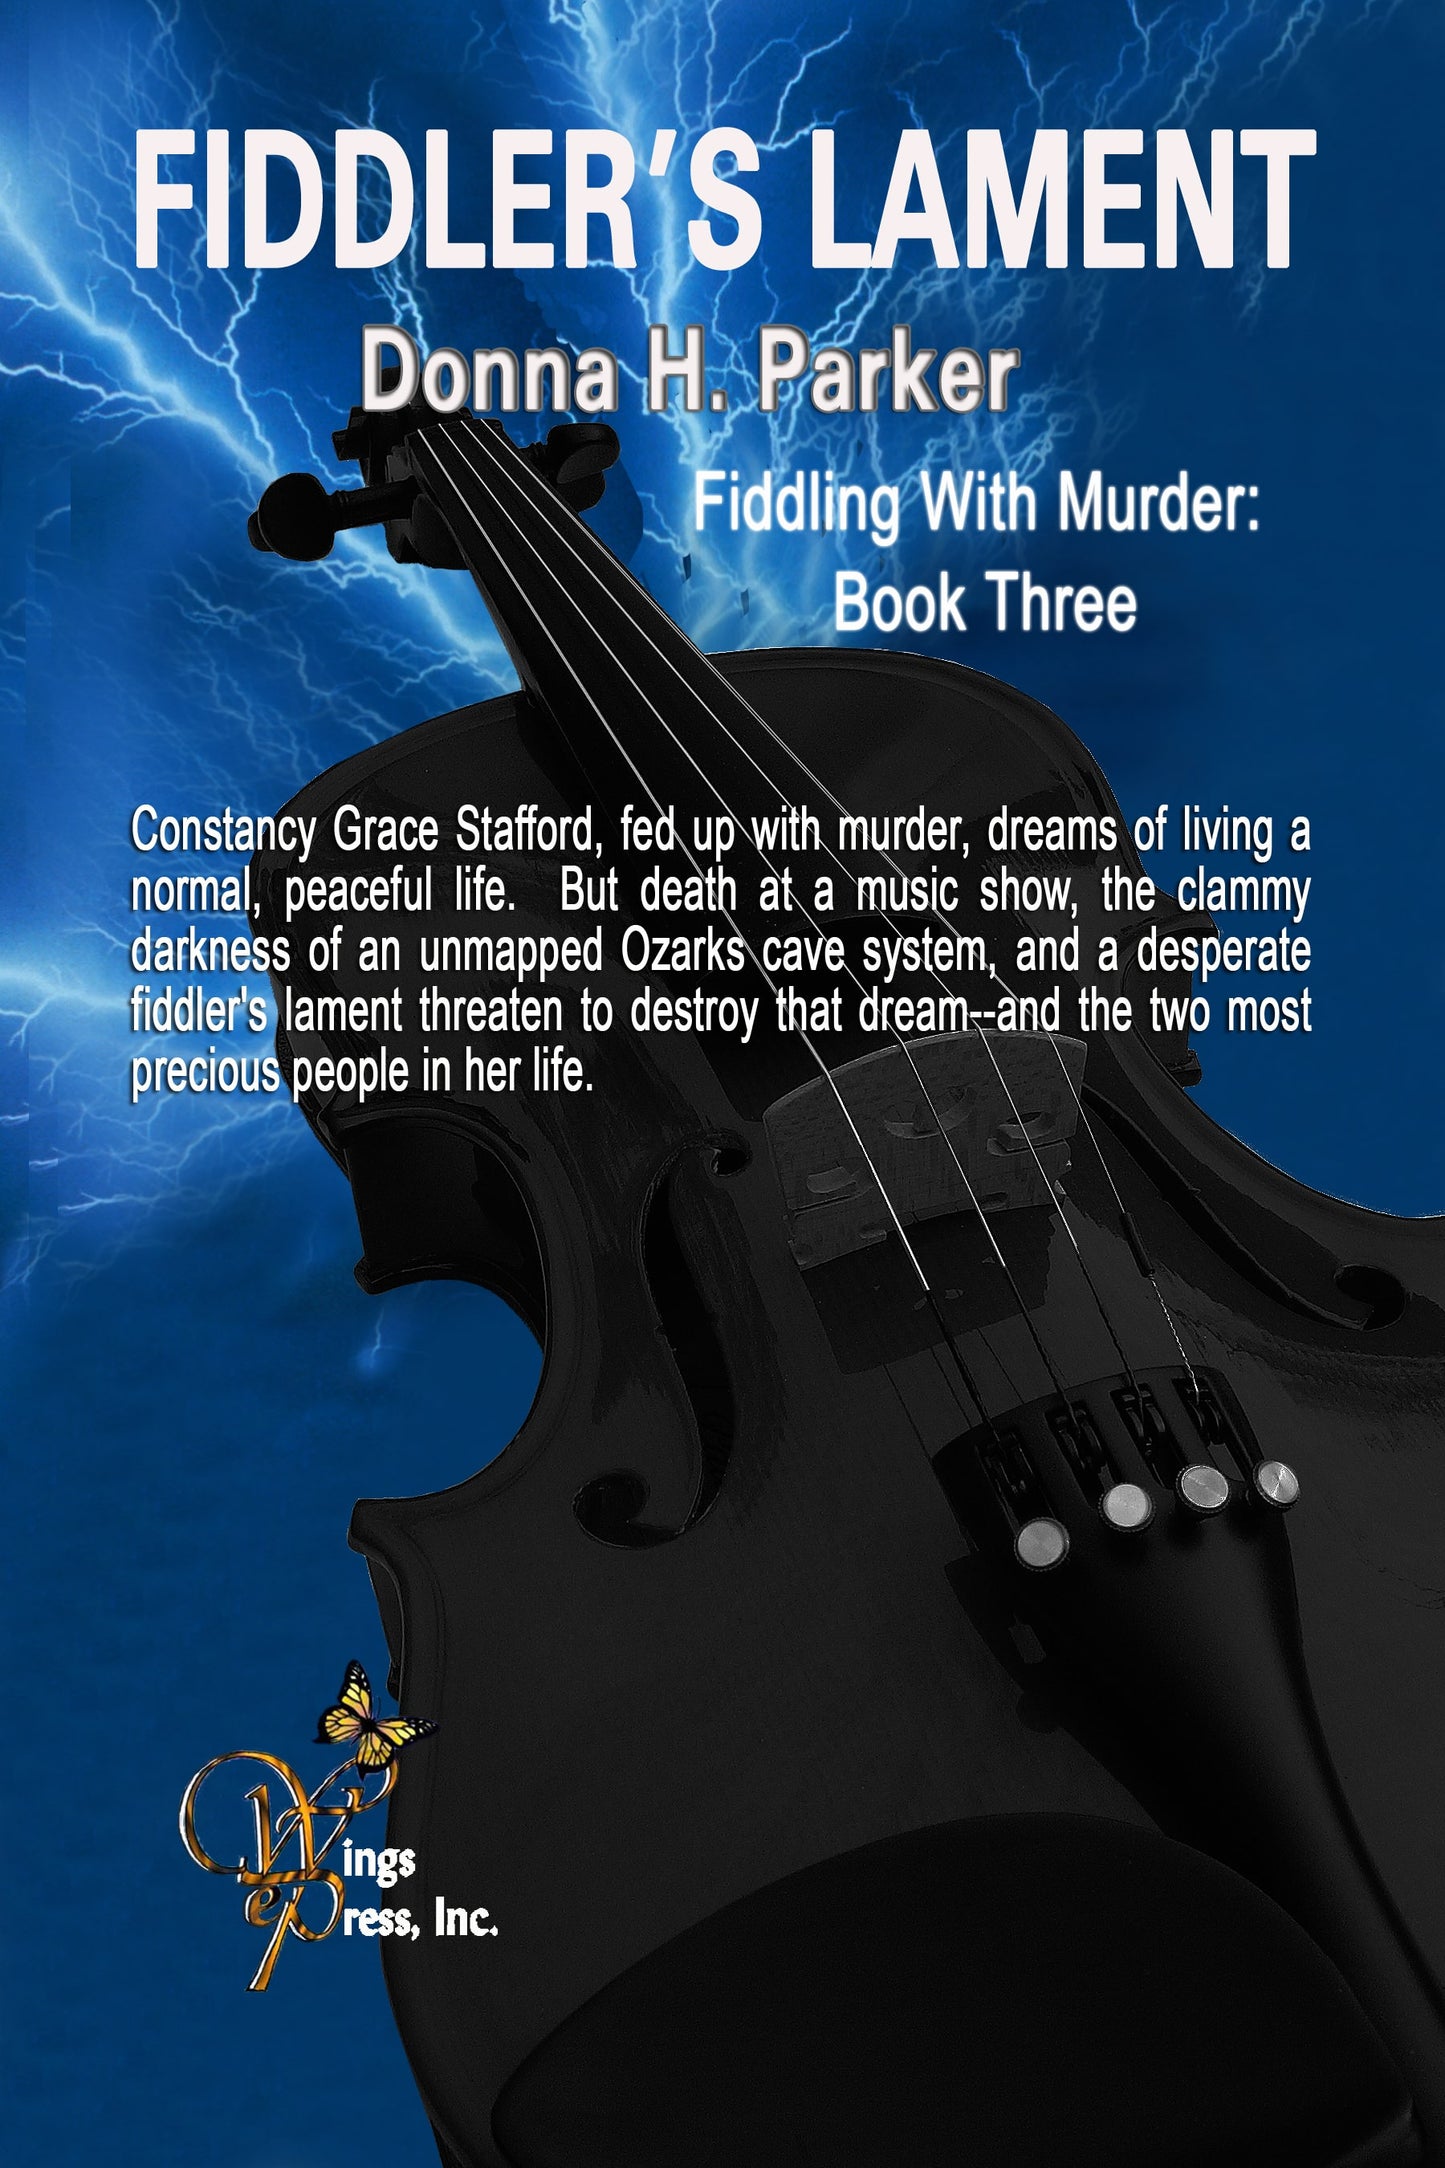 Fiddler's Lament (Fiddling With Murder Book 3)